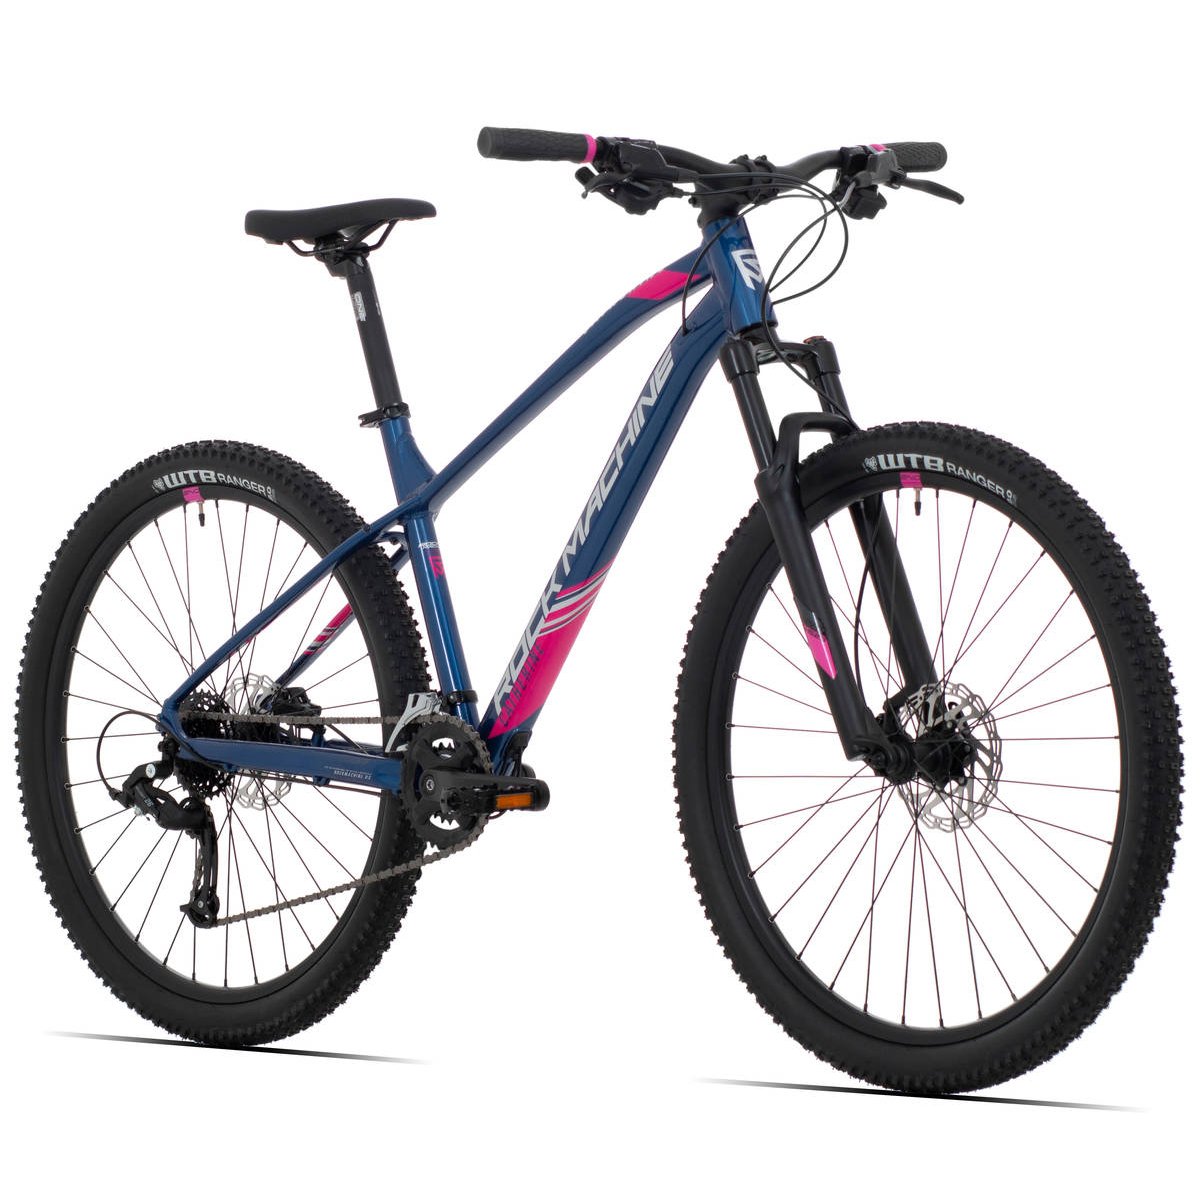 Kalnų dviratis Rock Machine 27.5 Catherine 70-27 mėlynas/rožinis (S) - 6